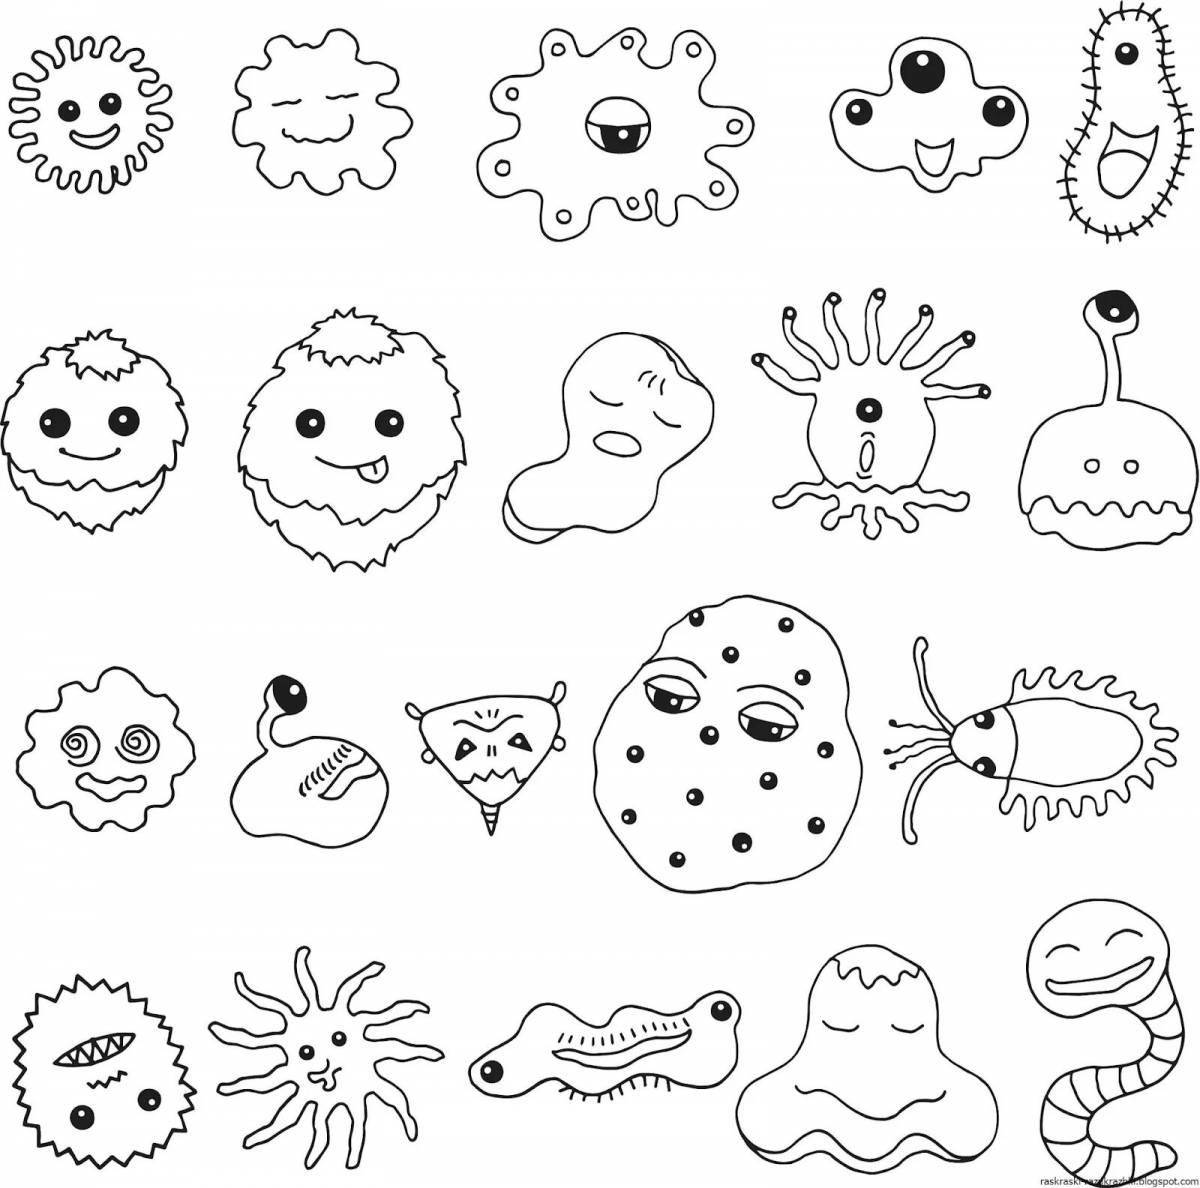 Веселые раскраски микробов для детей